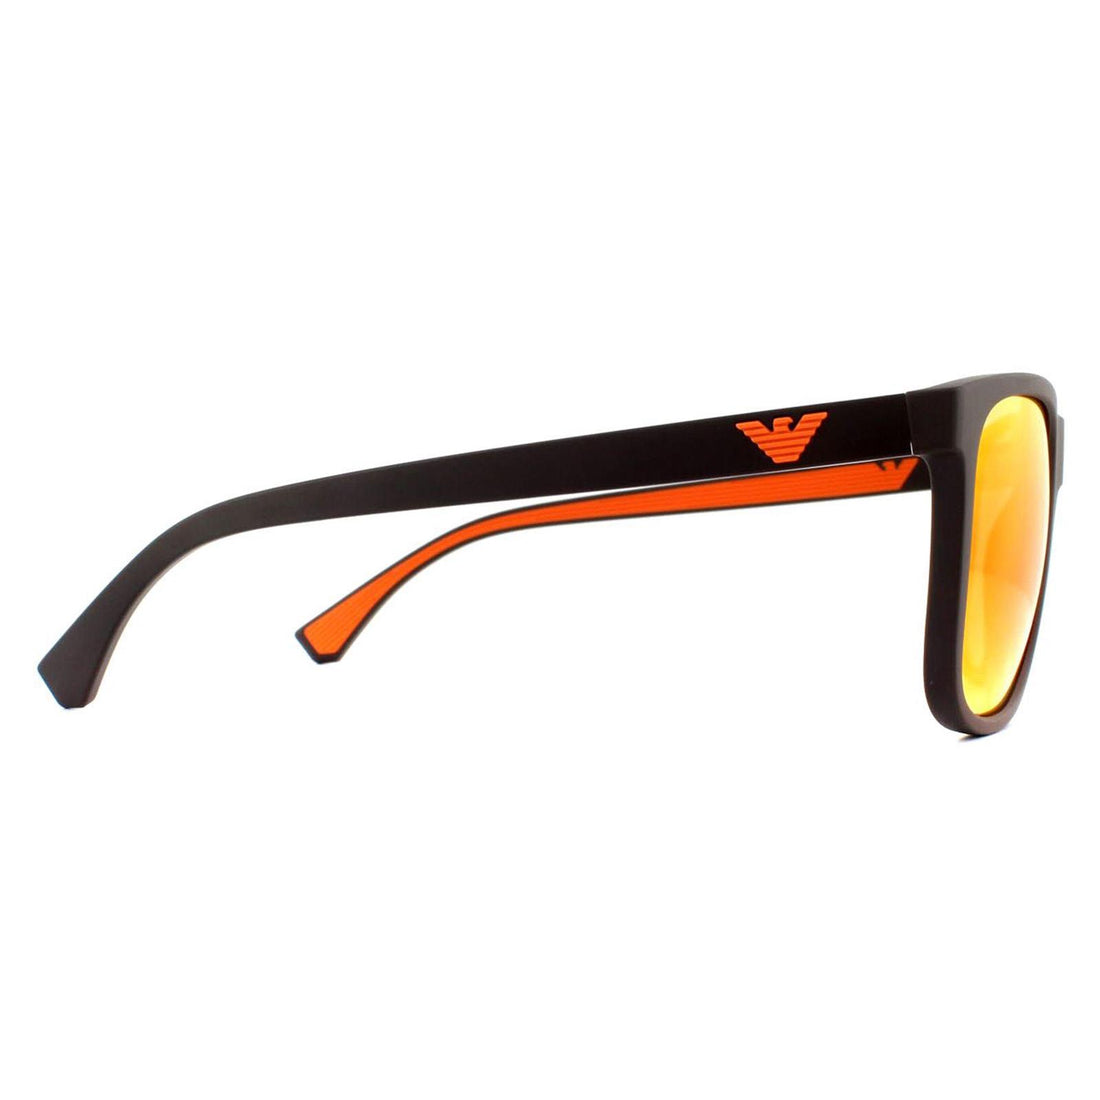 Emporio Armani EA4129 Sunglasses